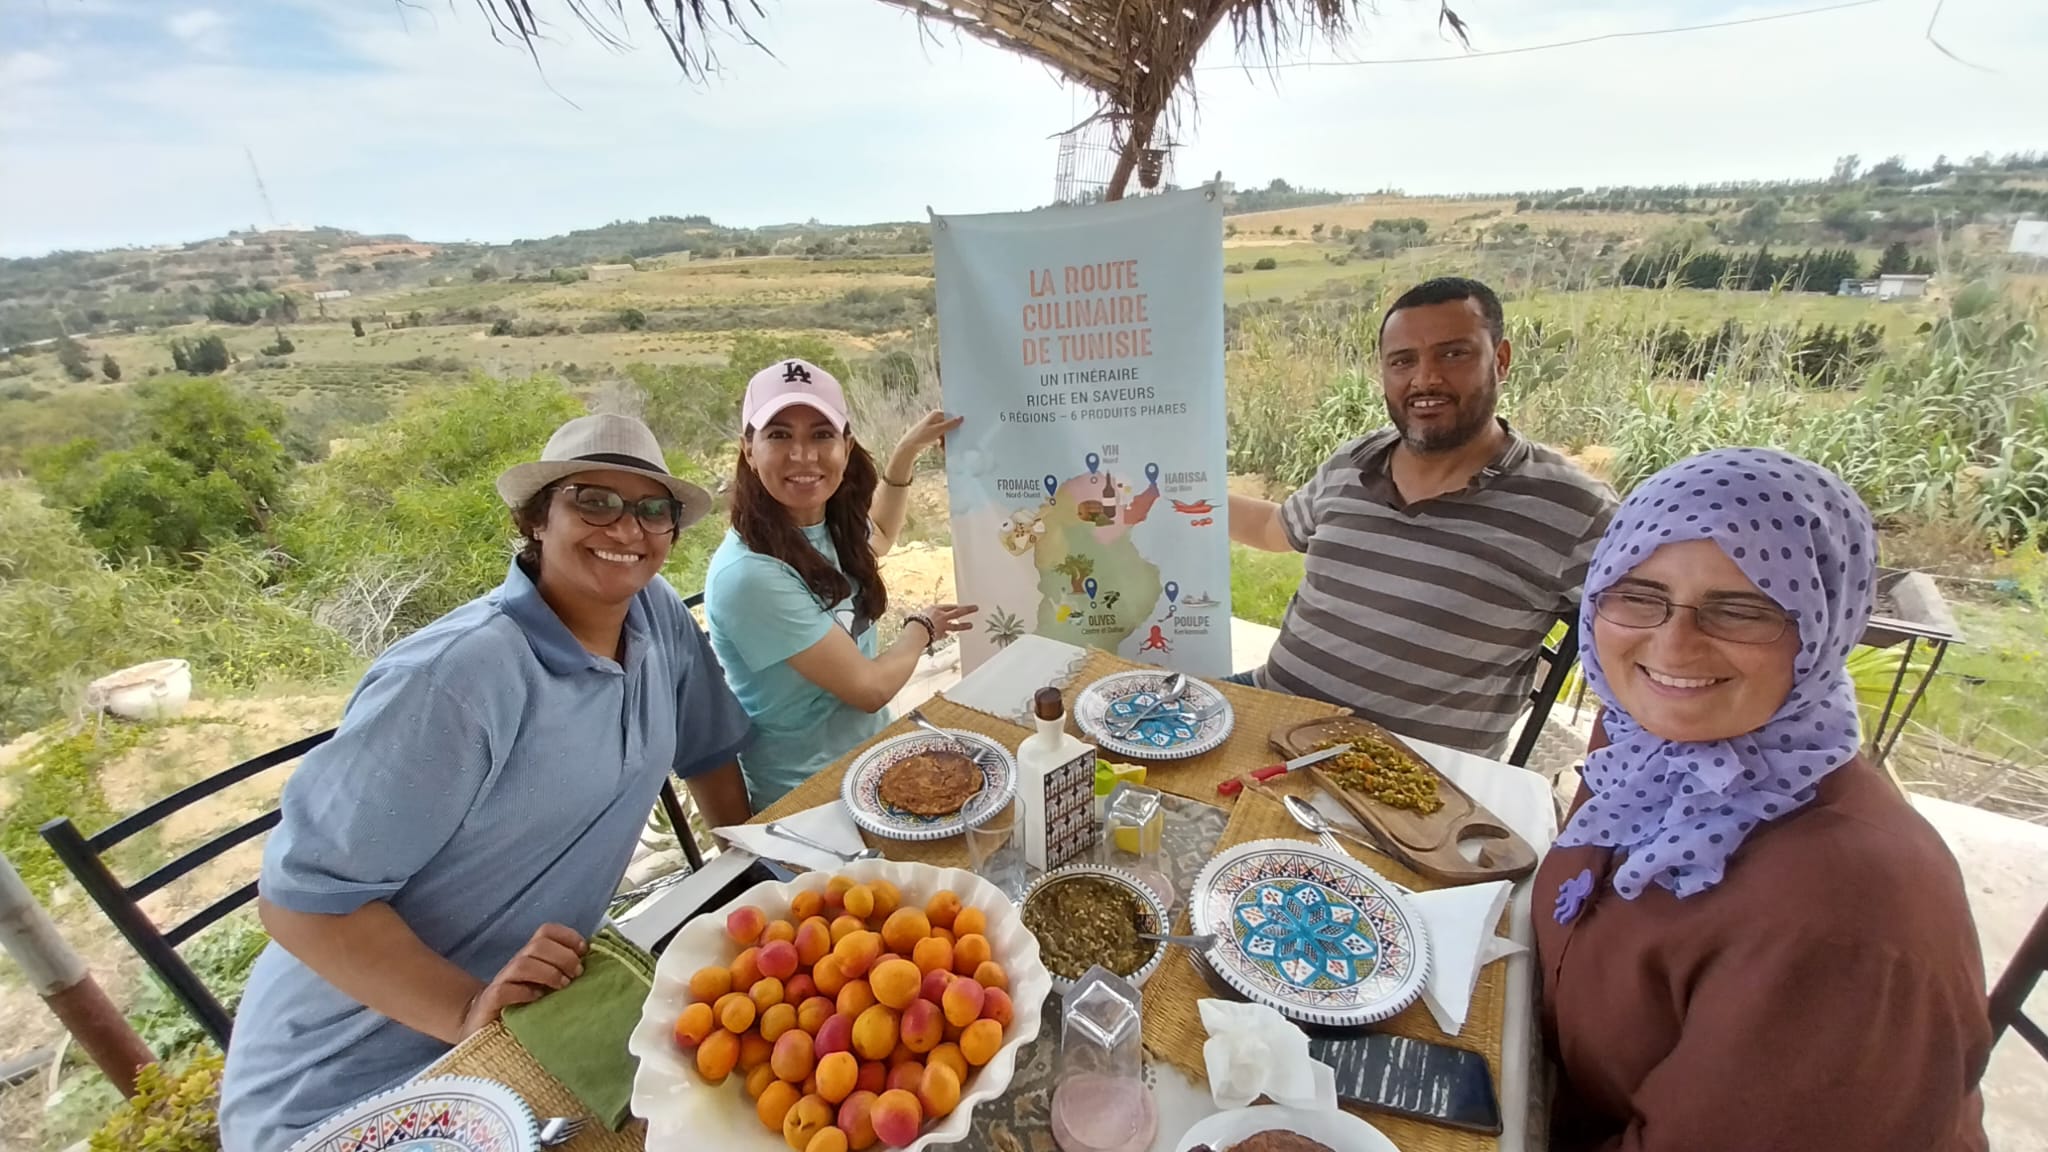 Route Culinaire de Tunisie visites techniques